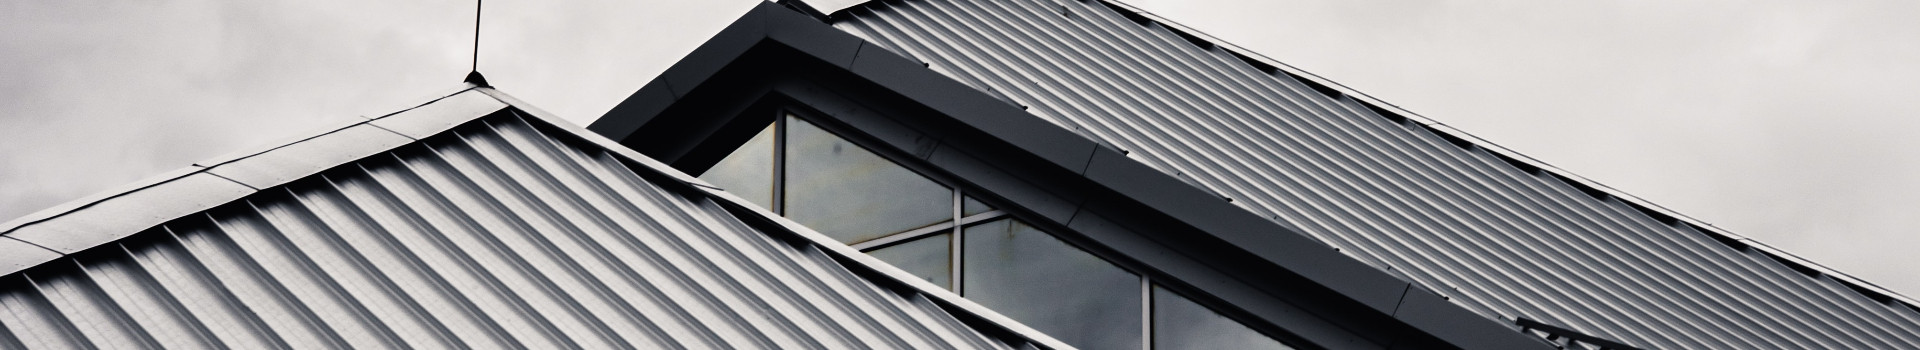 Teostame plekitöid! Painutame plekki paksusega kuni 1.0 mm (alumiinium 1,5 mm) ja pikkusega kuni 3100 mm. Meilt saate nii akna, kui katuse ääreplekid, vee-, otsaplekid ja kõik liistprofiil plekid! Lisaks teostame üldehitustöid.